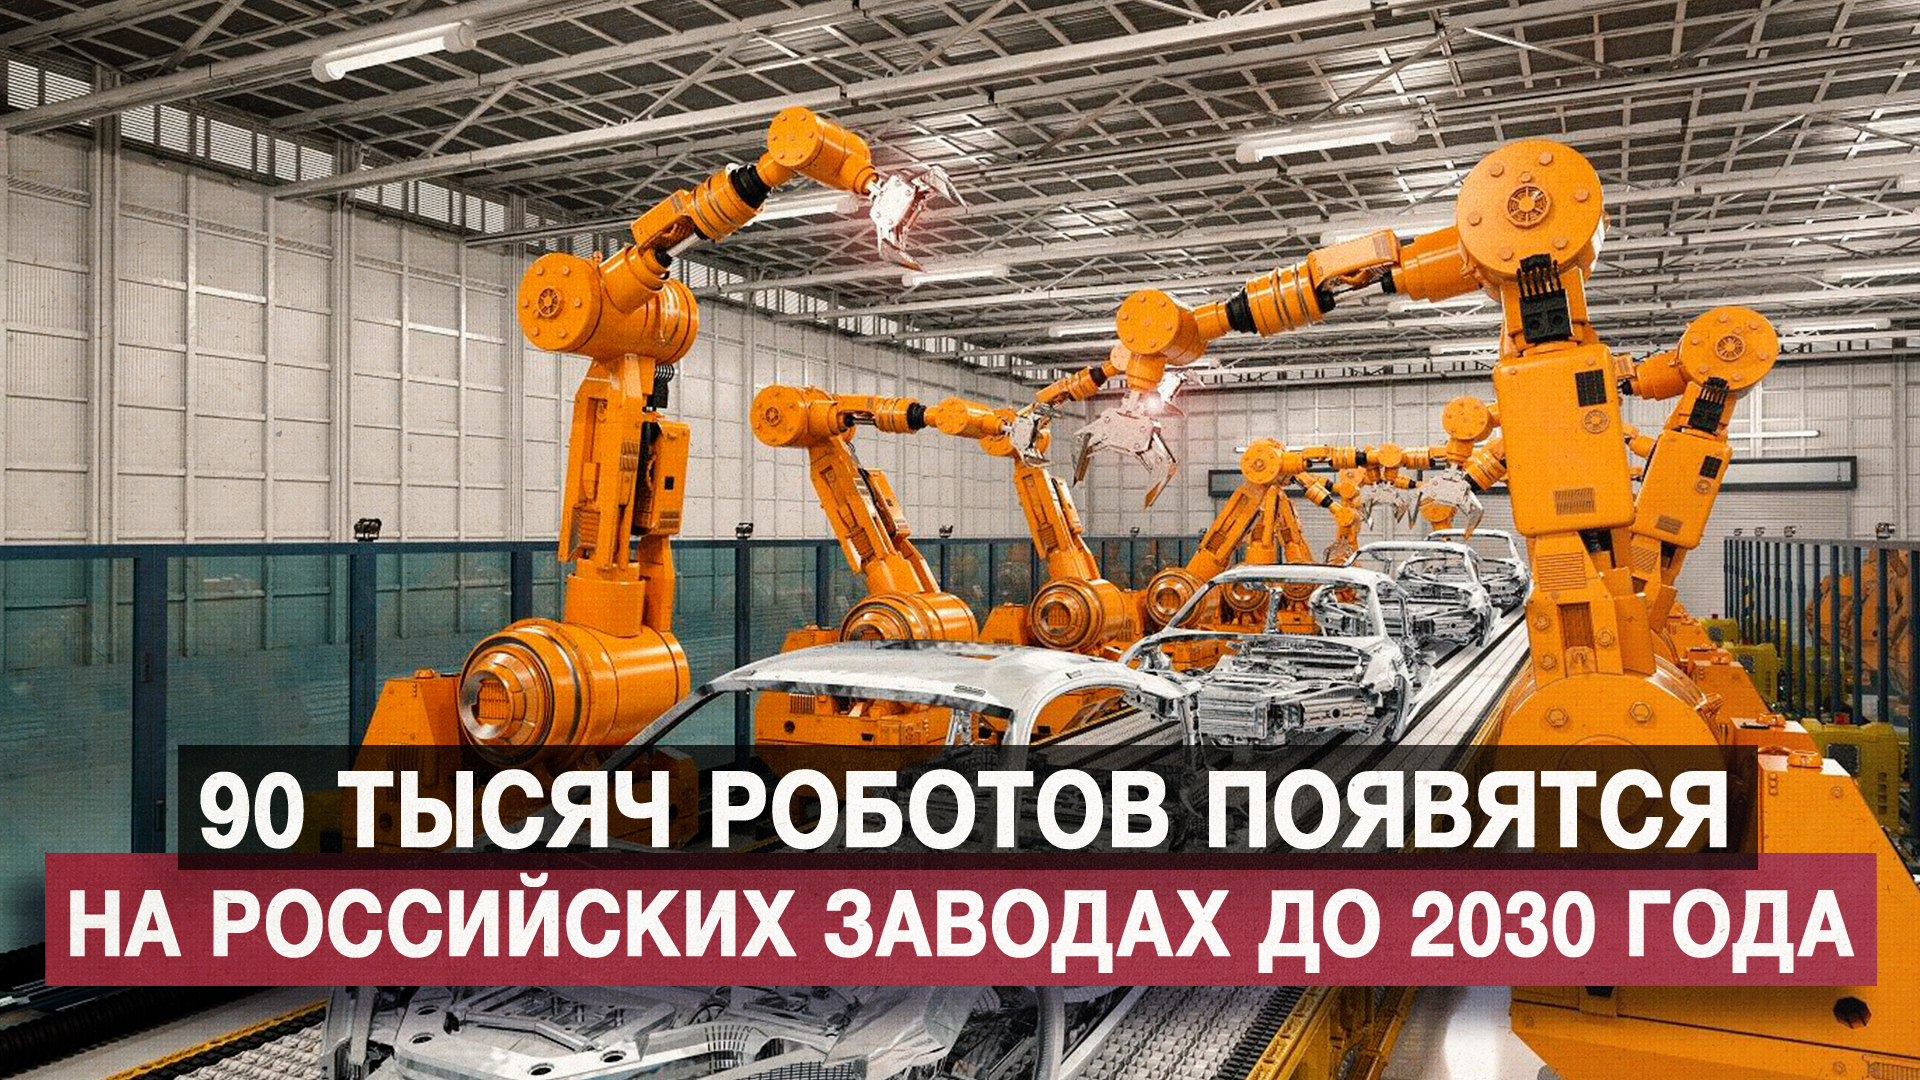 90 тысяч роботов появятся на российских заводах до 2030 года